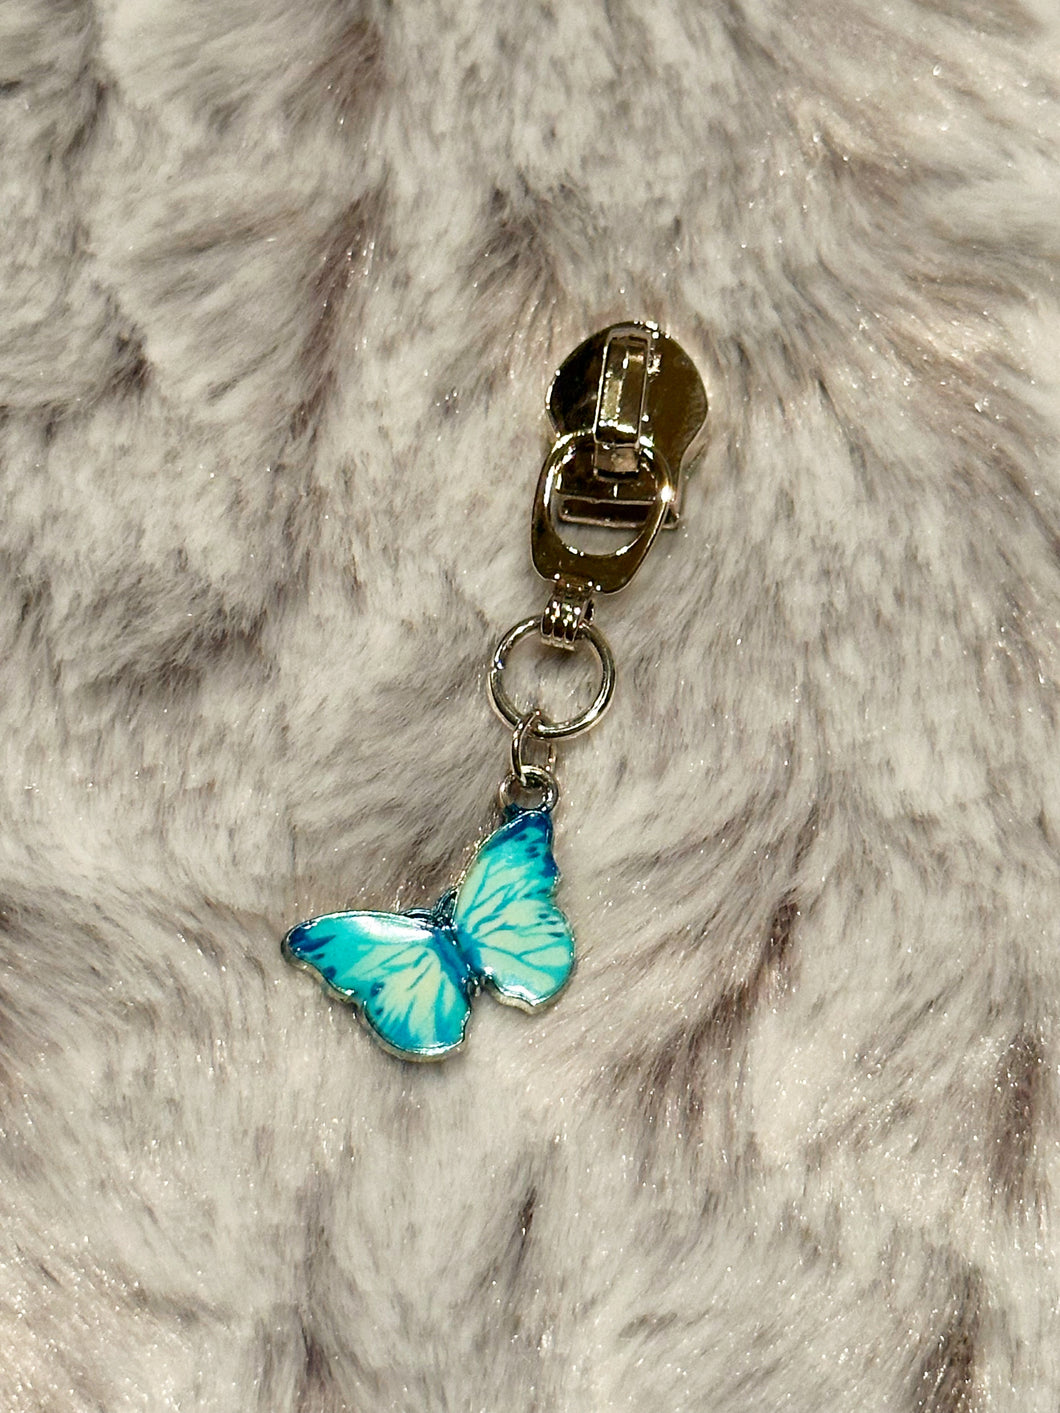 Blue Butterfly Zipper Pull (enamel)